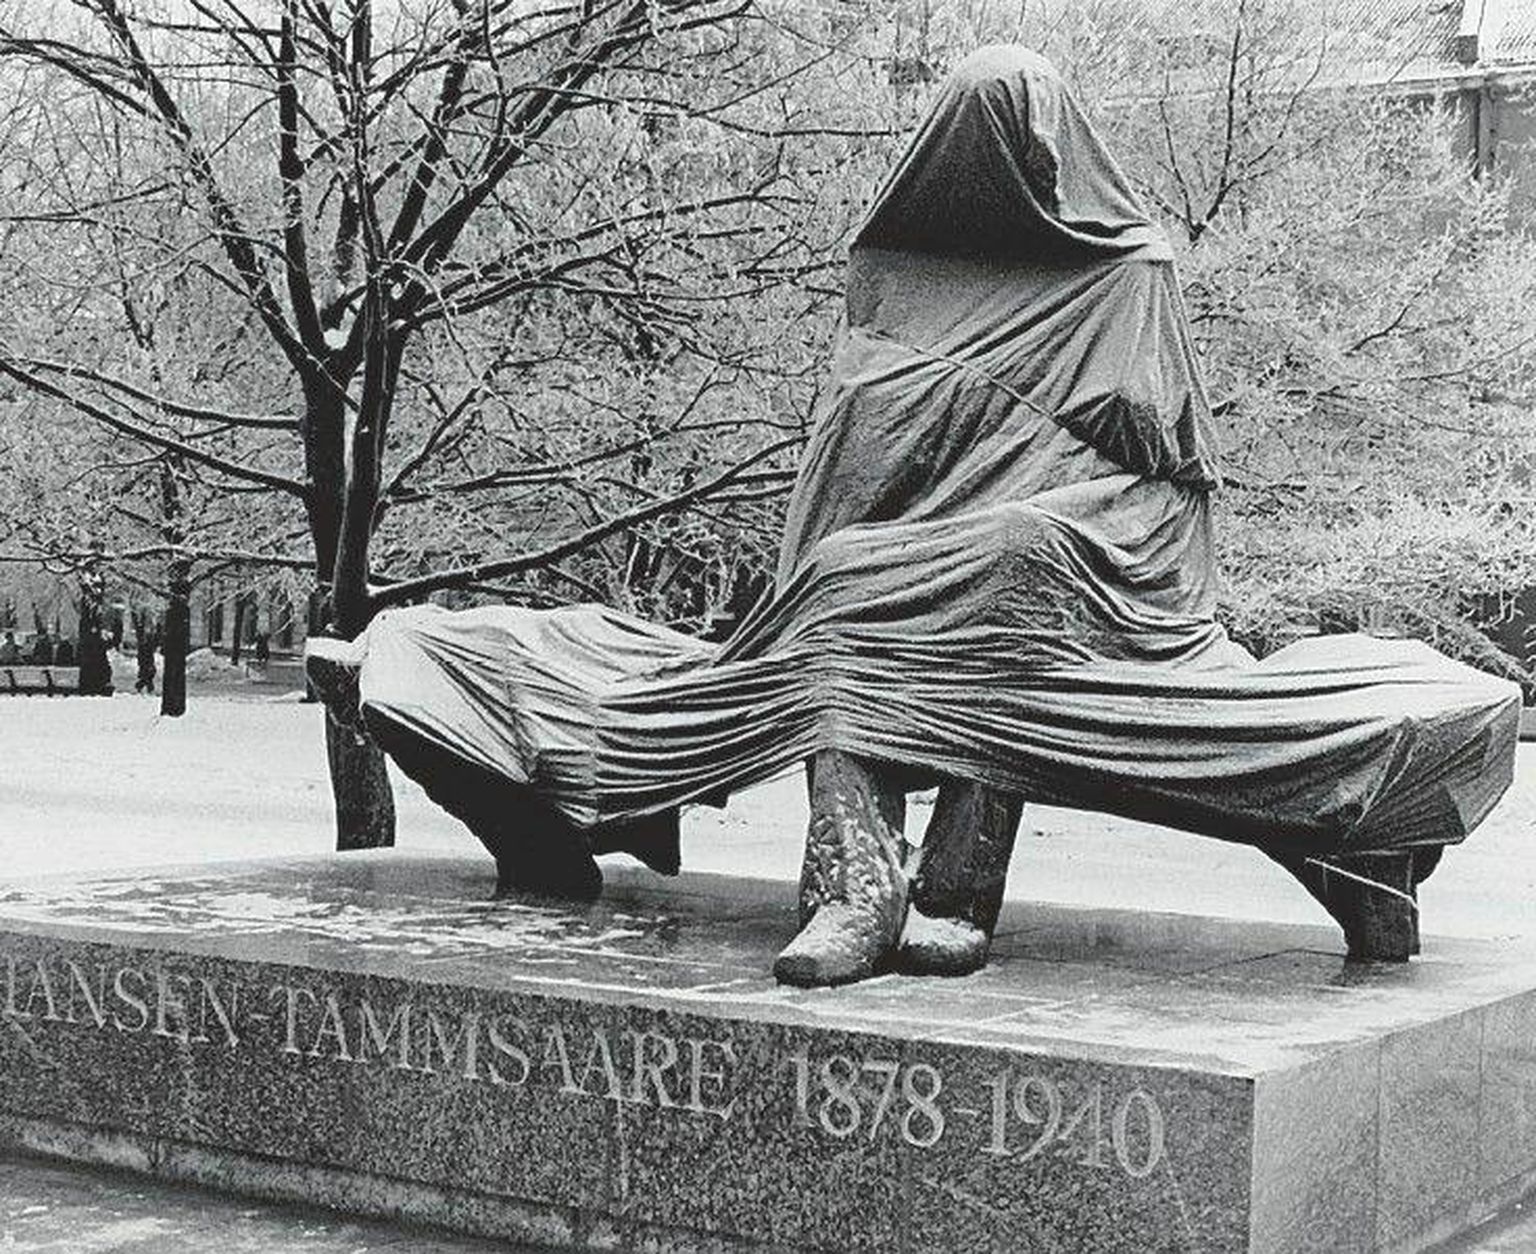 A. H. Tammsaare on inimsoole ja -kultuurile diagnoosi pannes ja prognoose andes justkui arst, kes leppinud täielikult haiguste, väärarengute, vaevuste ja surmaga, mis kuuluvad võõrandamatult inimliku eksistentsi juurde. Pildil tema monument päev enne selle pidulikku avamist 30. jaanuaril 1978.